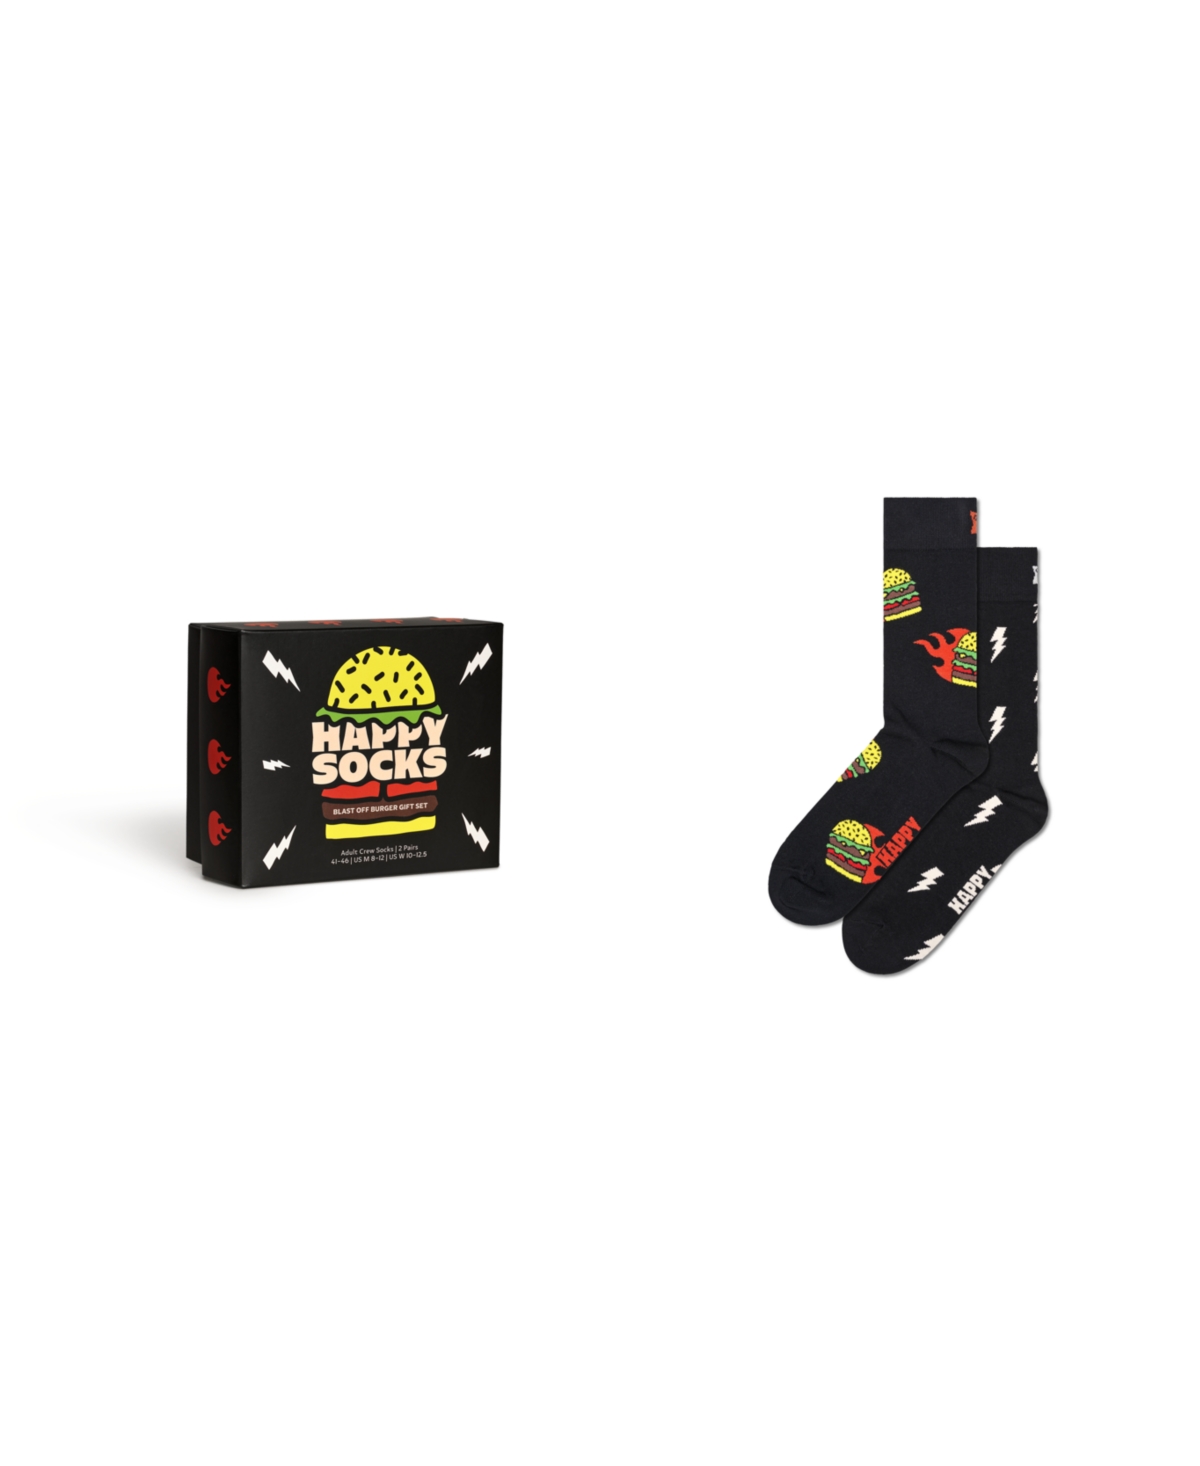 Blast Off Burger Socks Gift Set, Pack of 2 - Multi